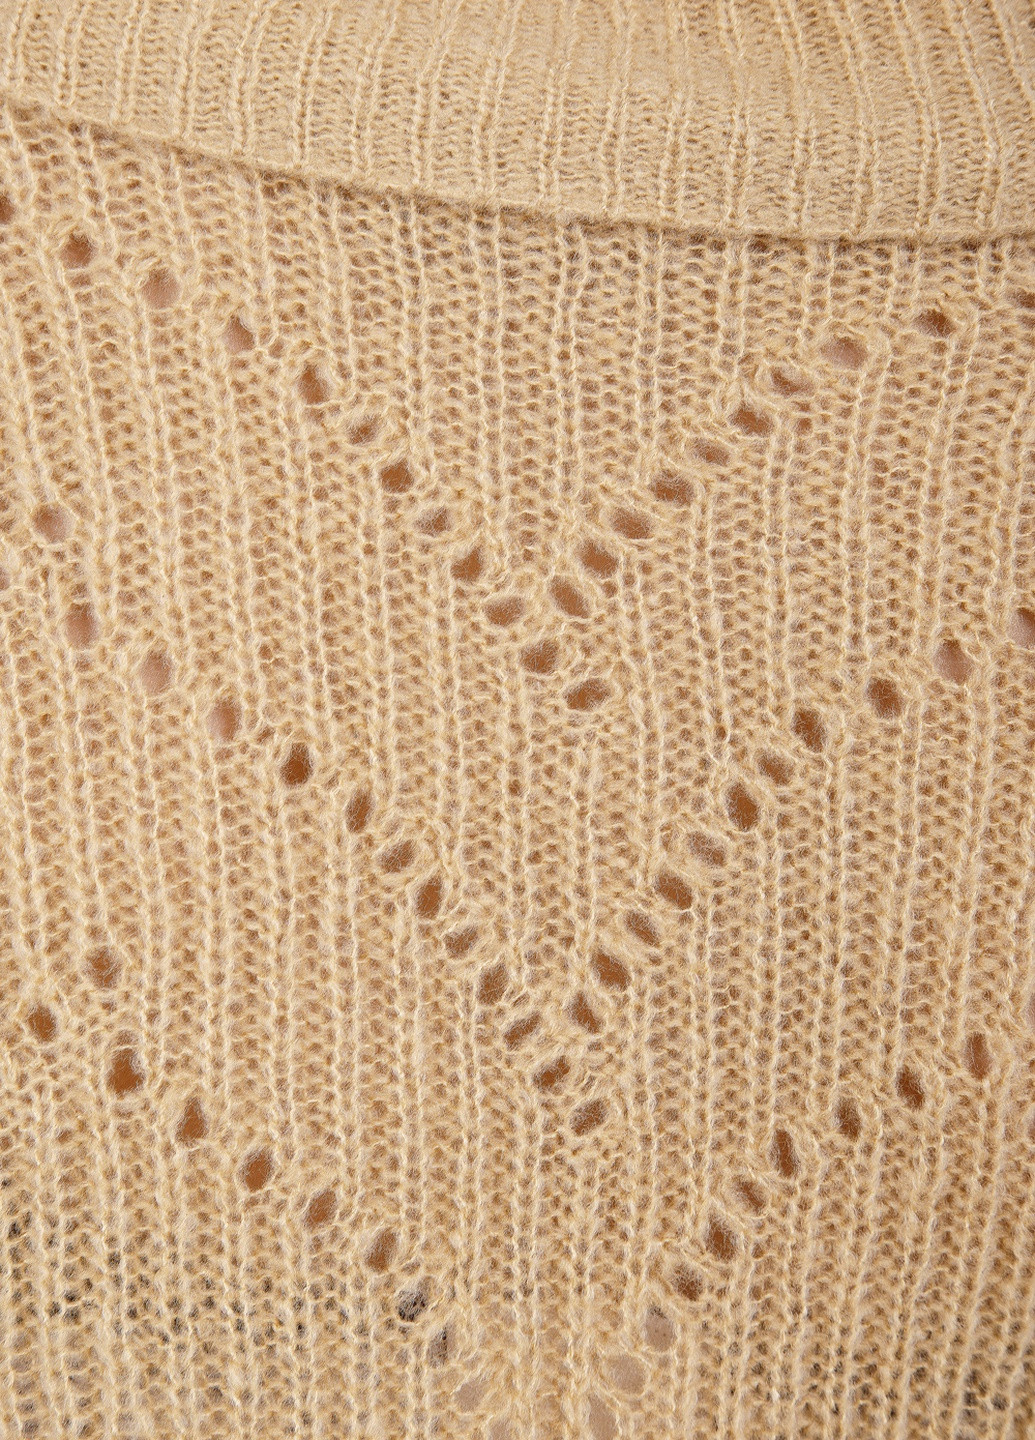 Песочный демисезонный свитер пуловер Triko Bakh 1404